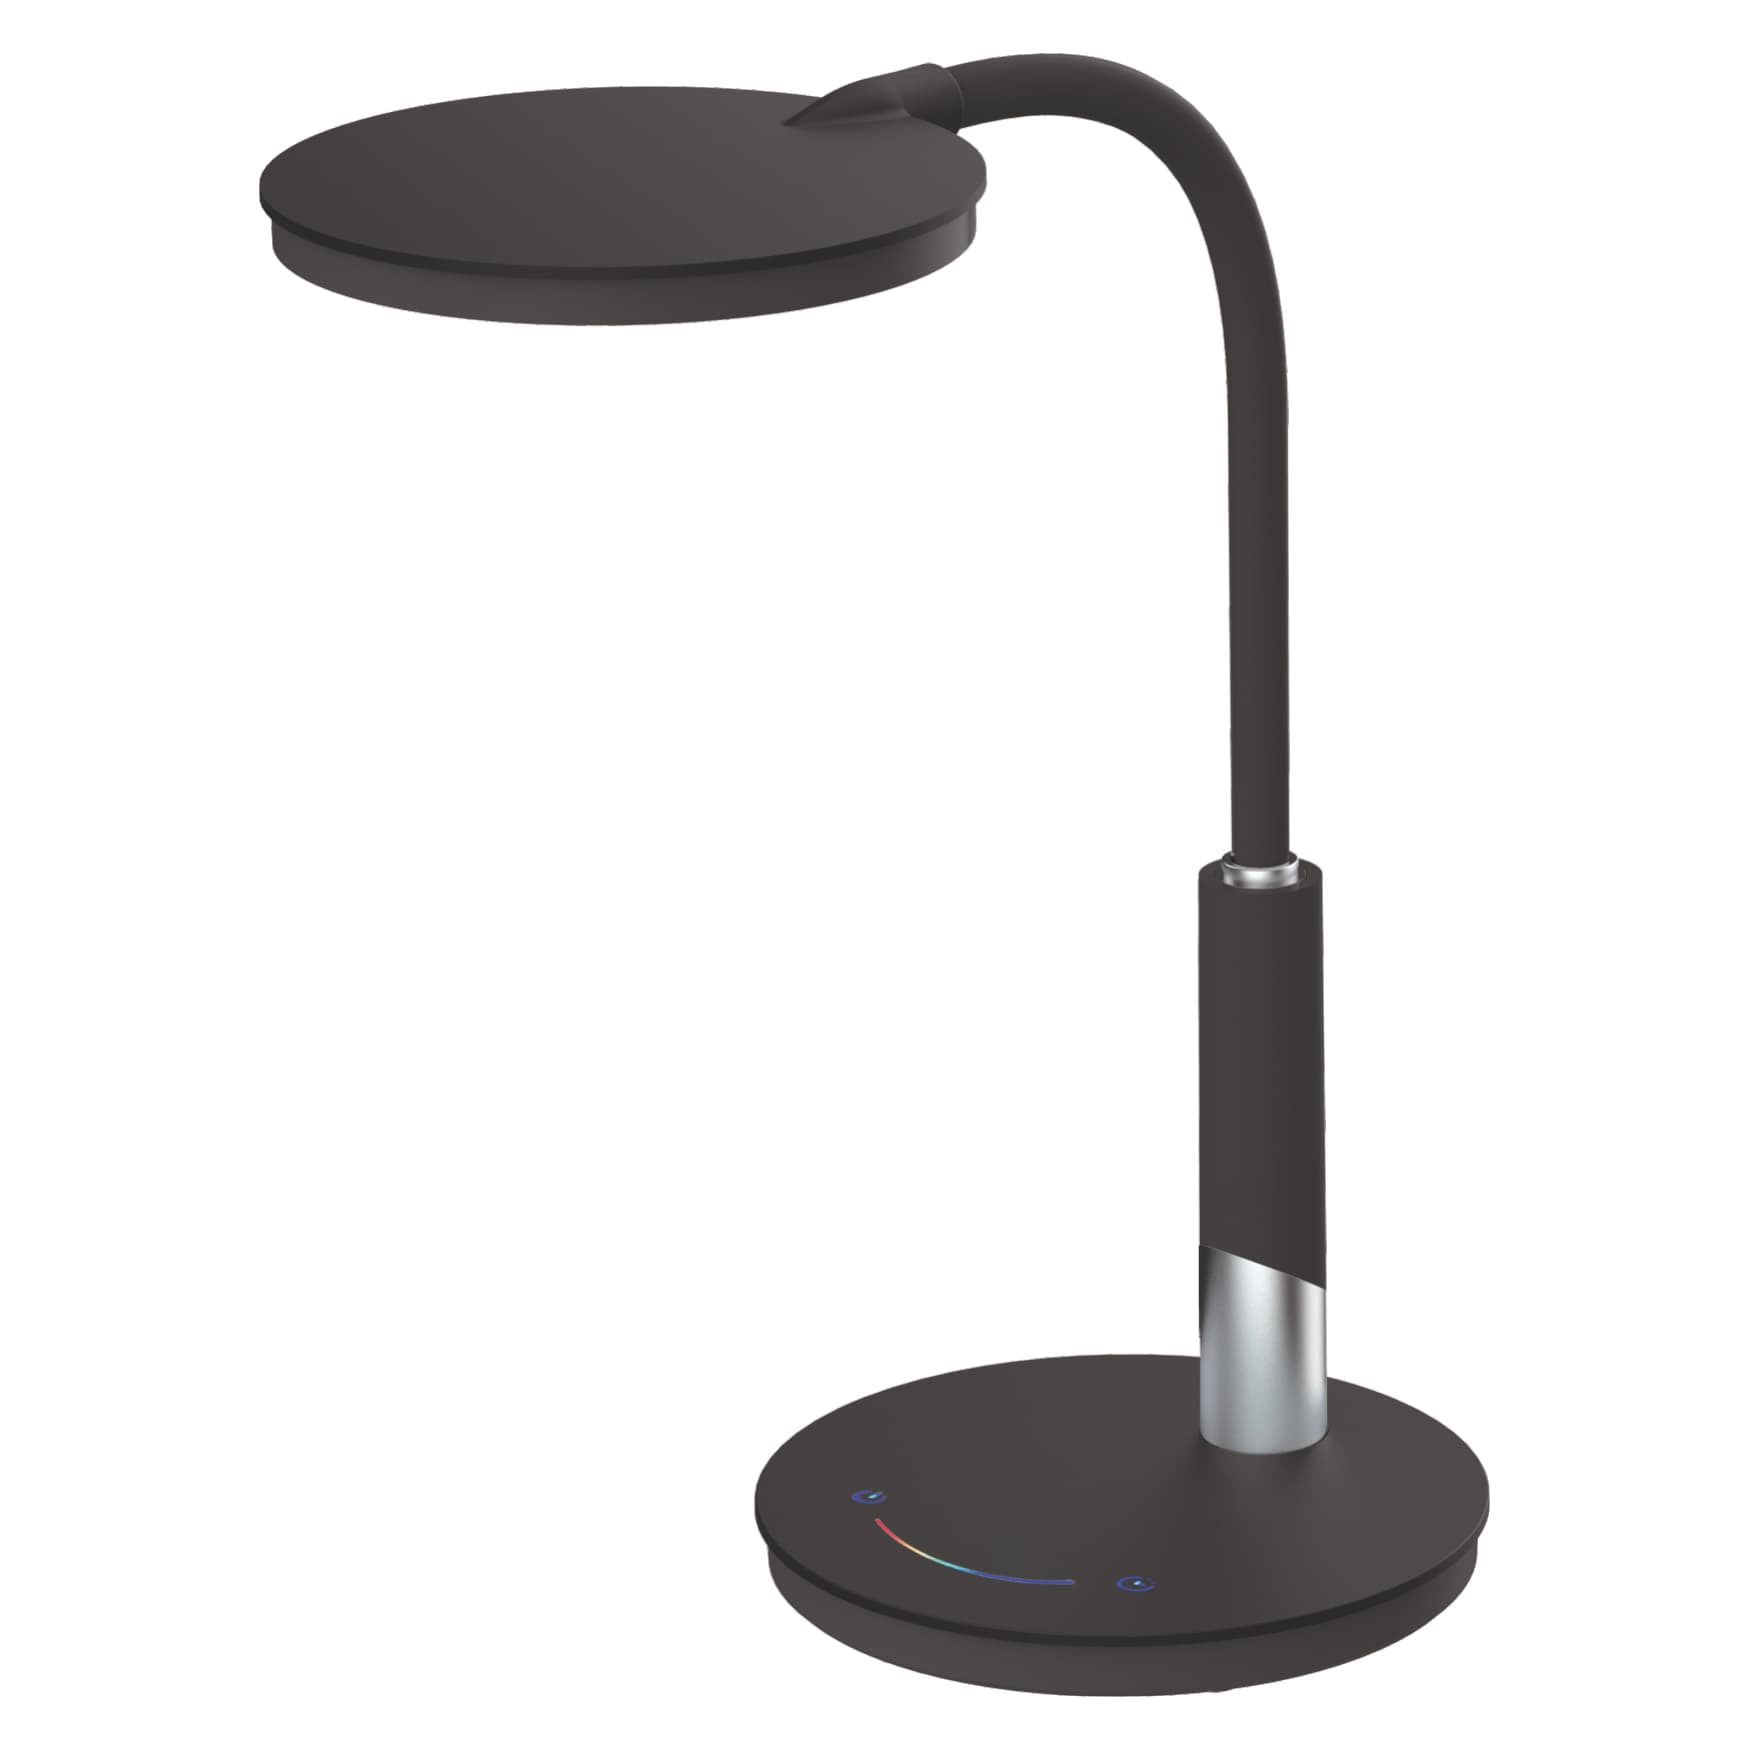 Czarna, solidna lampka biurkowa K-BL1237 CZARNY z serii DINO